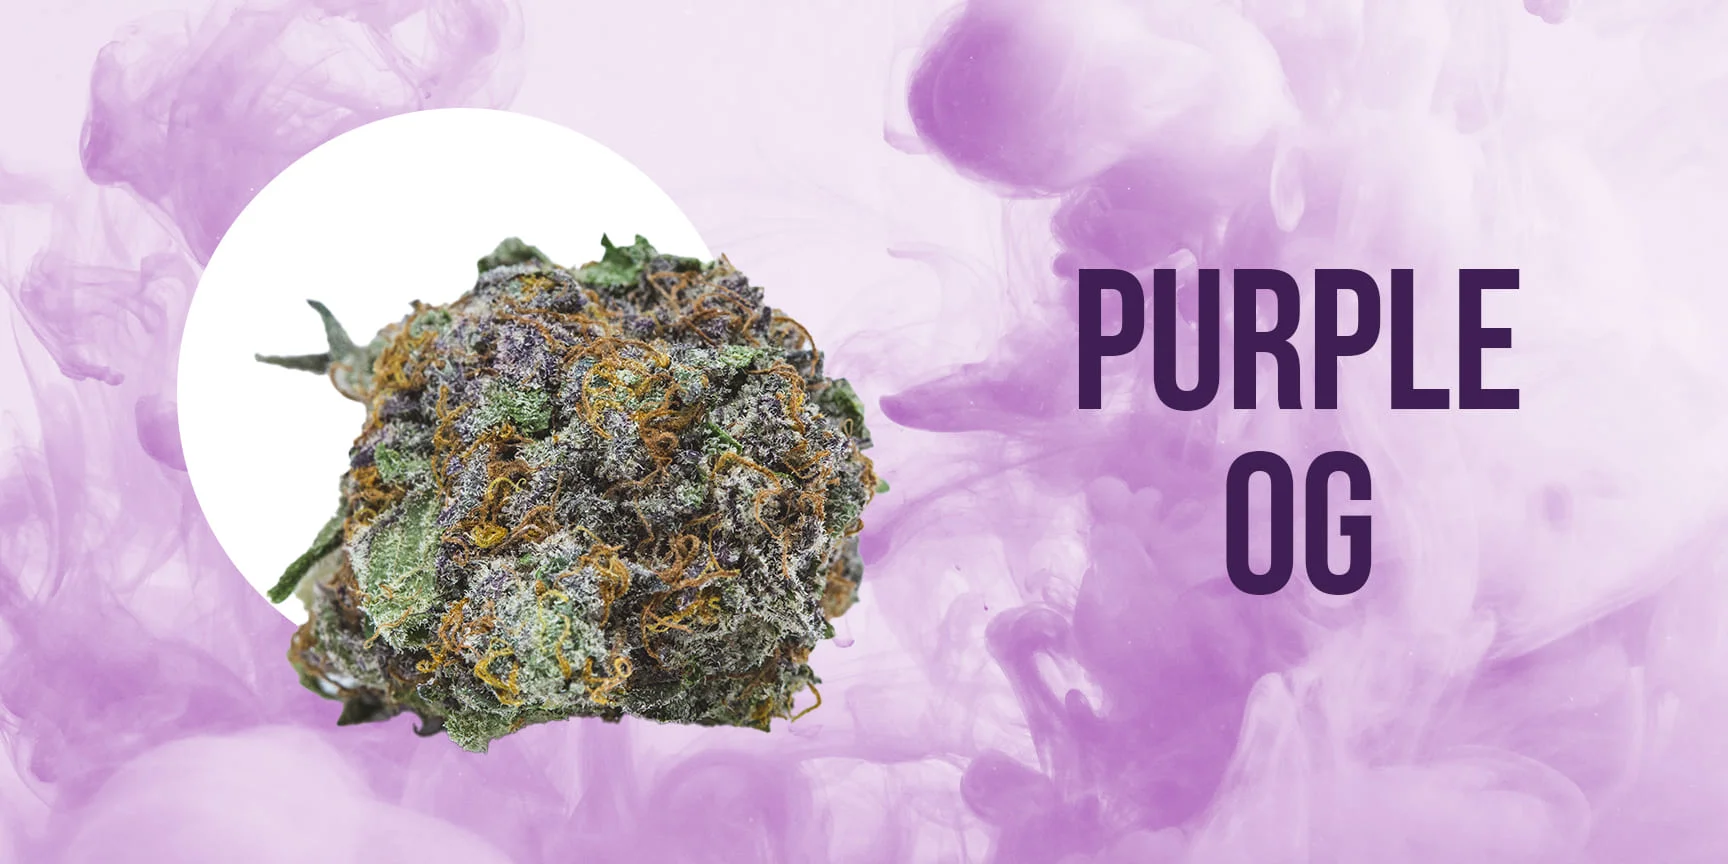 Bud of cannabis strain Purple OG